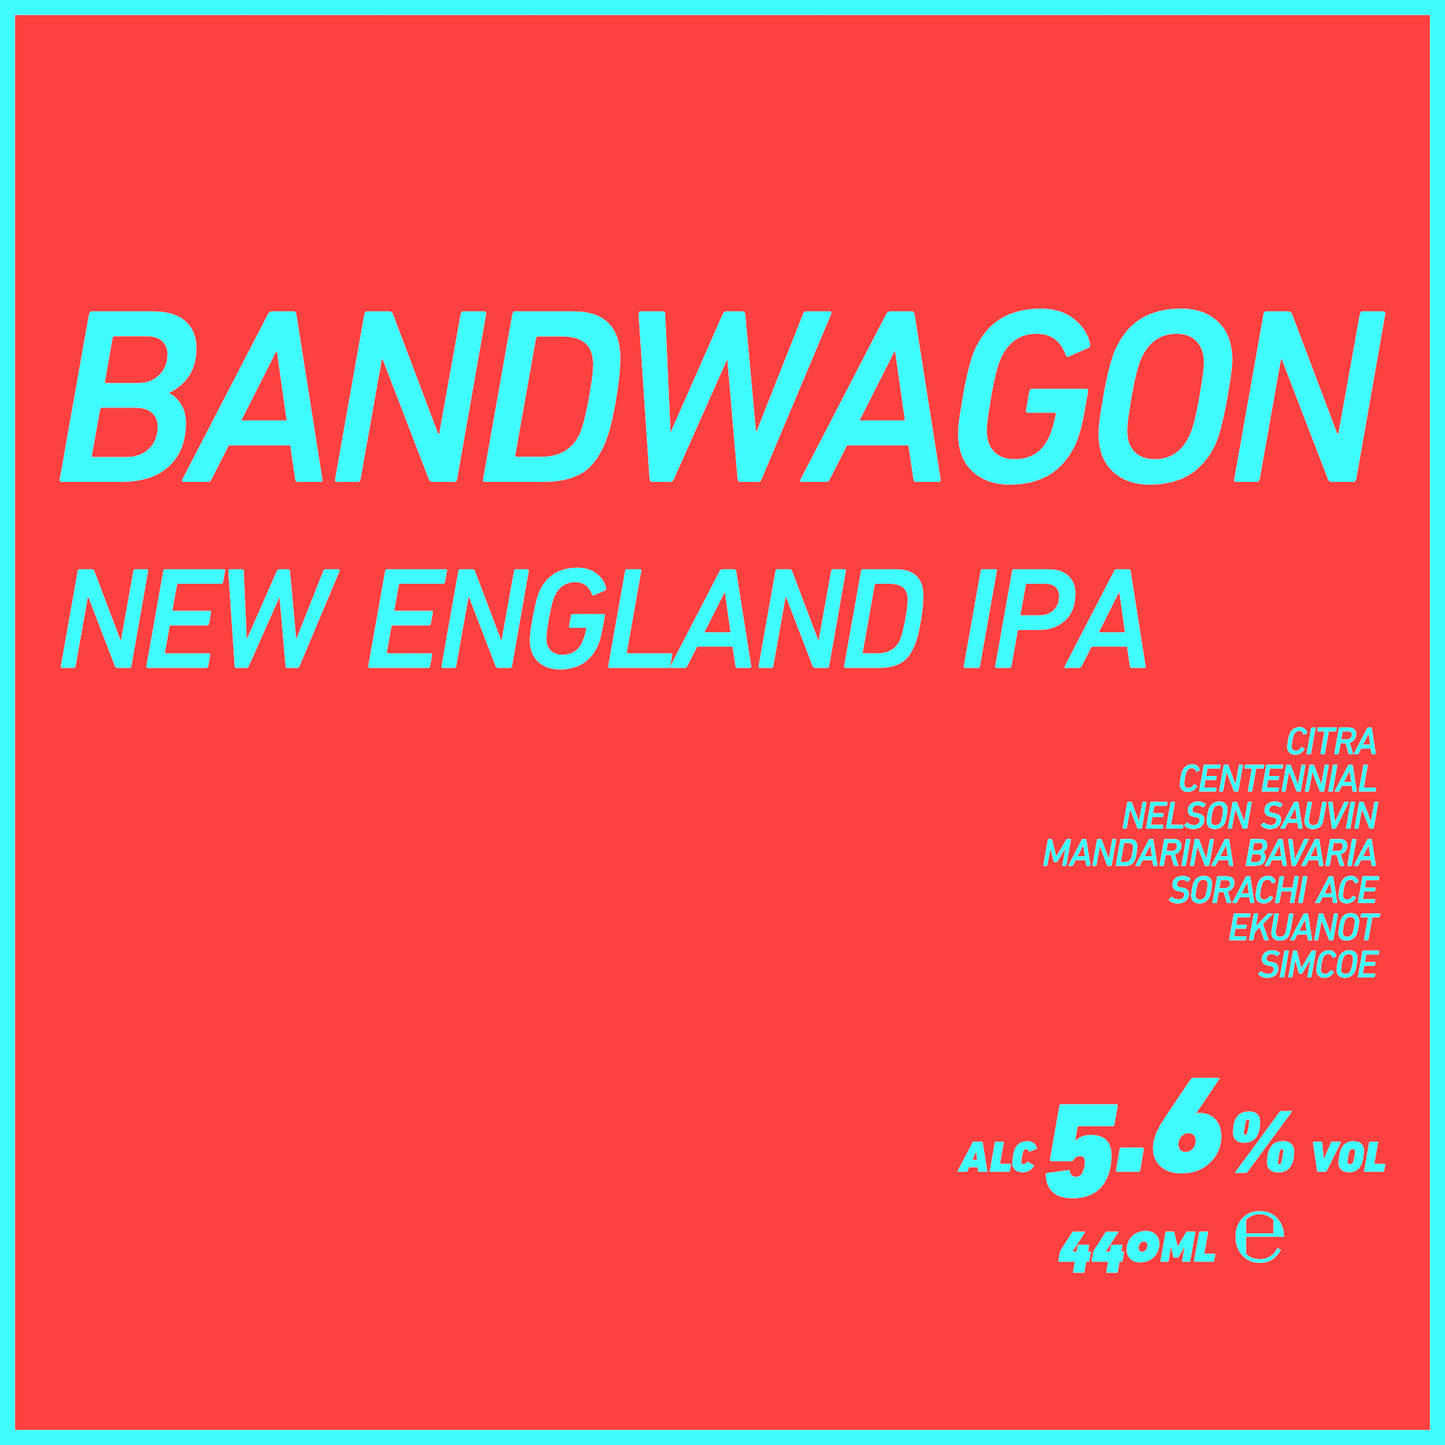 Bandwagon New England IPA